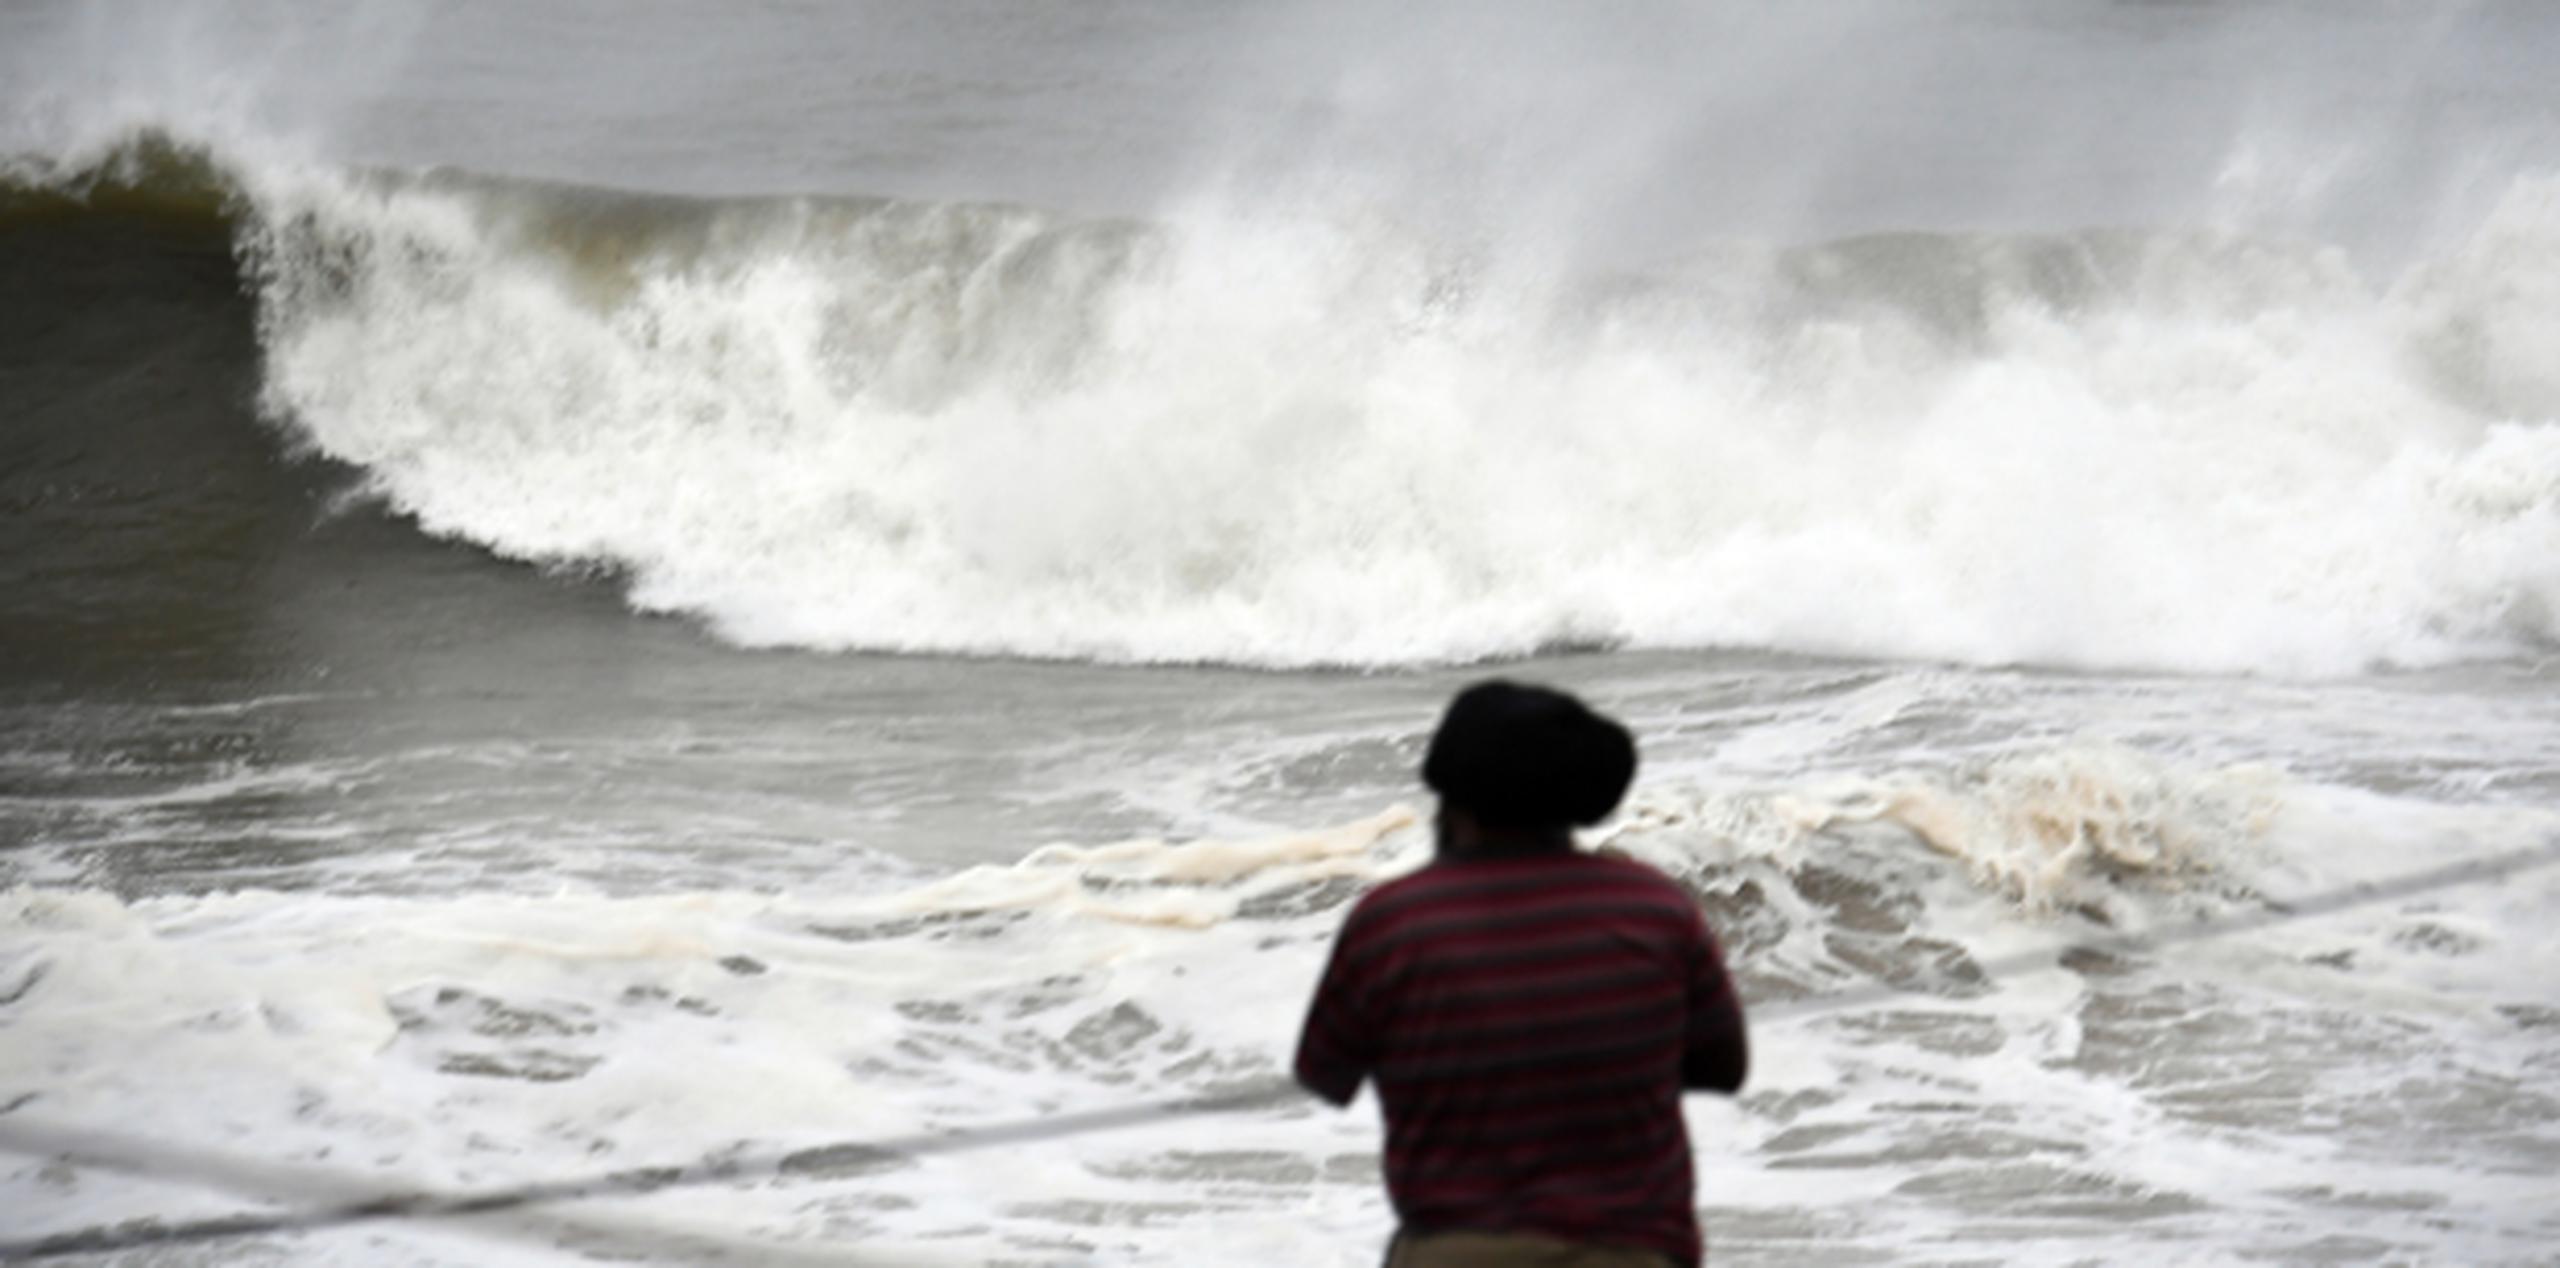 El huracán está causando fuerte oleaje en diversos sectores del país. (andre.kang@gfrmedia.com)